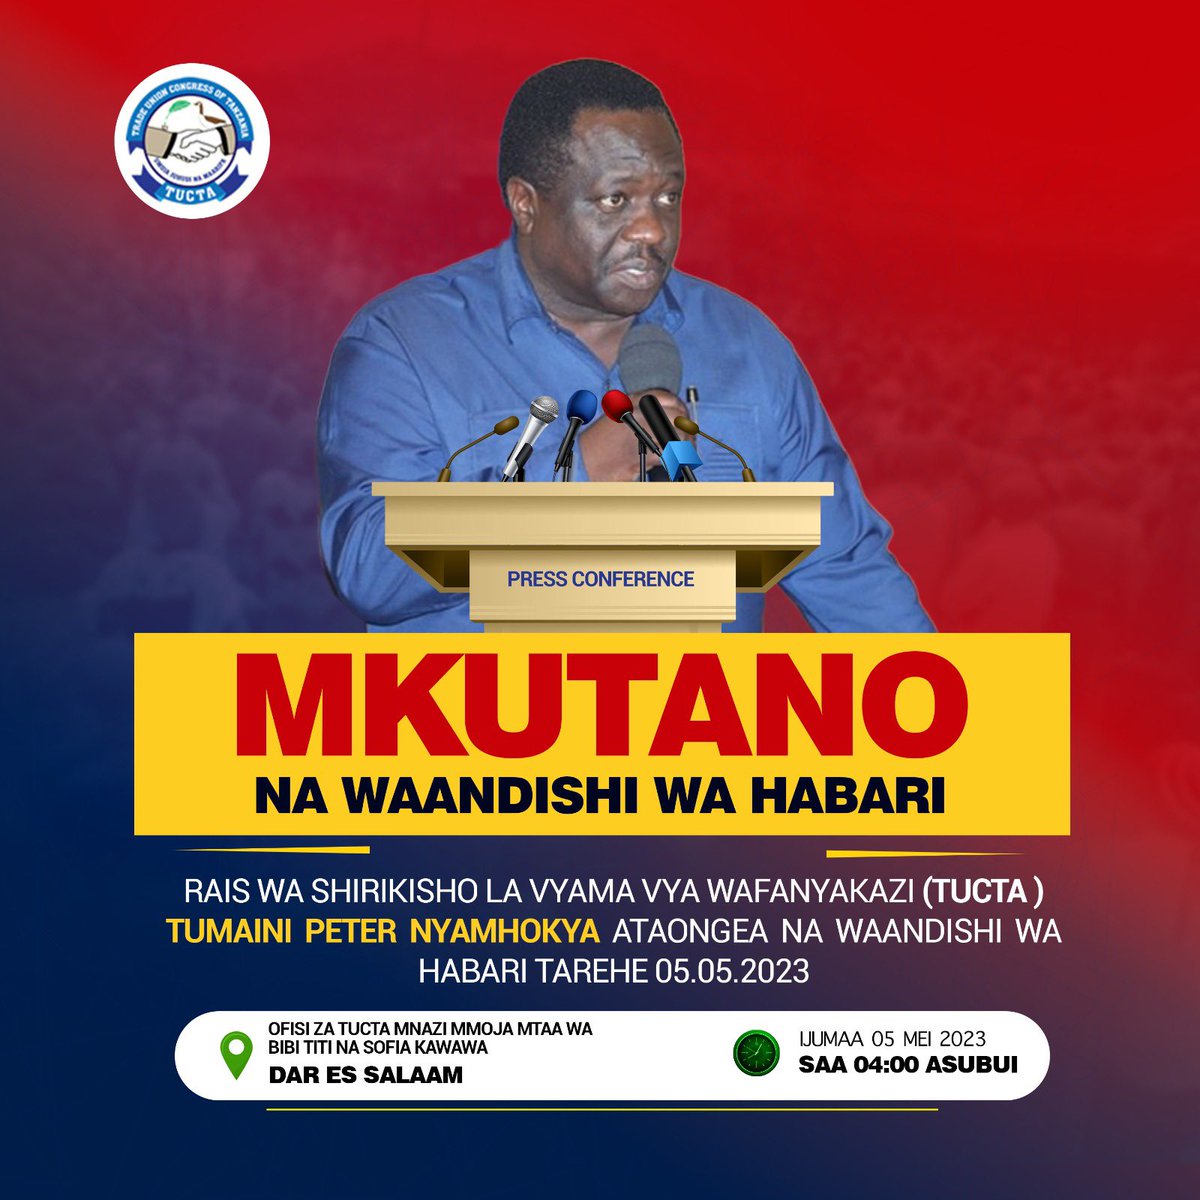 #Tucta watakuwa na mkutano na Waandishibwa Habari kesho asubuhi kwenye Ofisi zao. Waandishi mnakaribishwa.